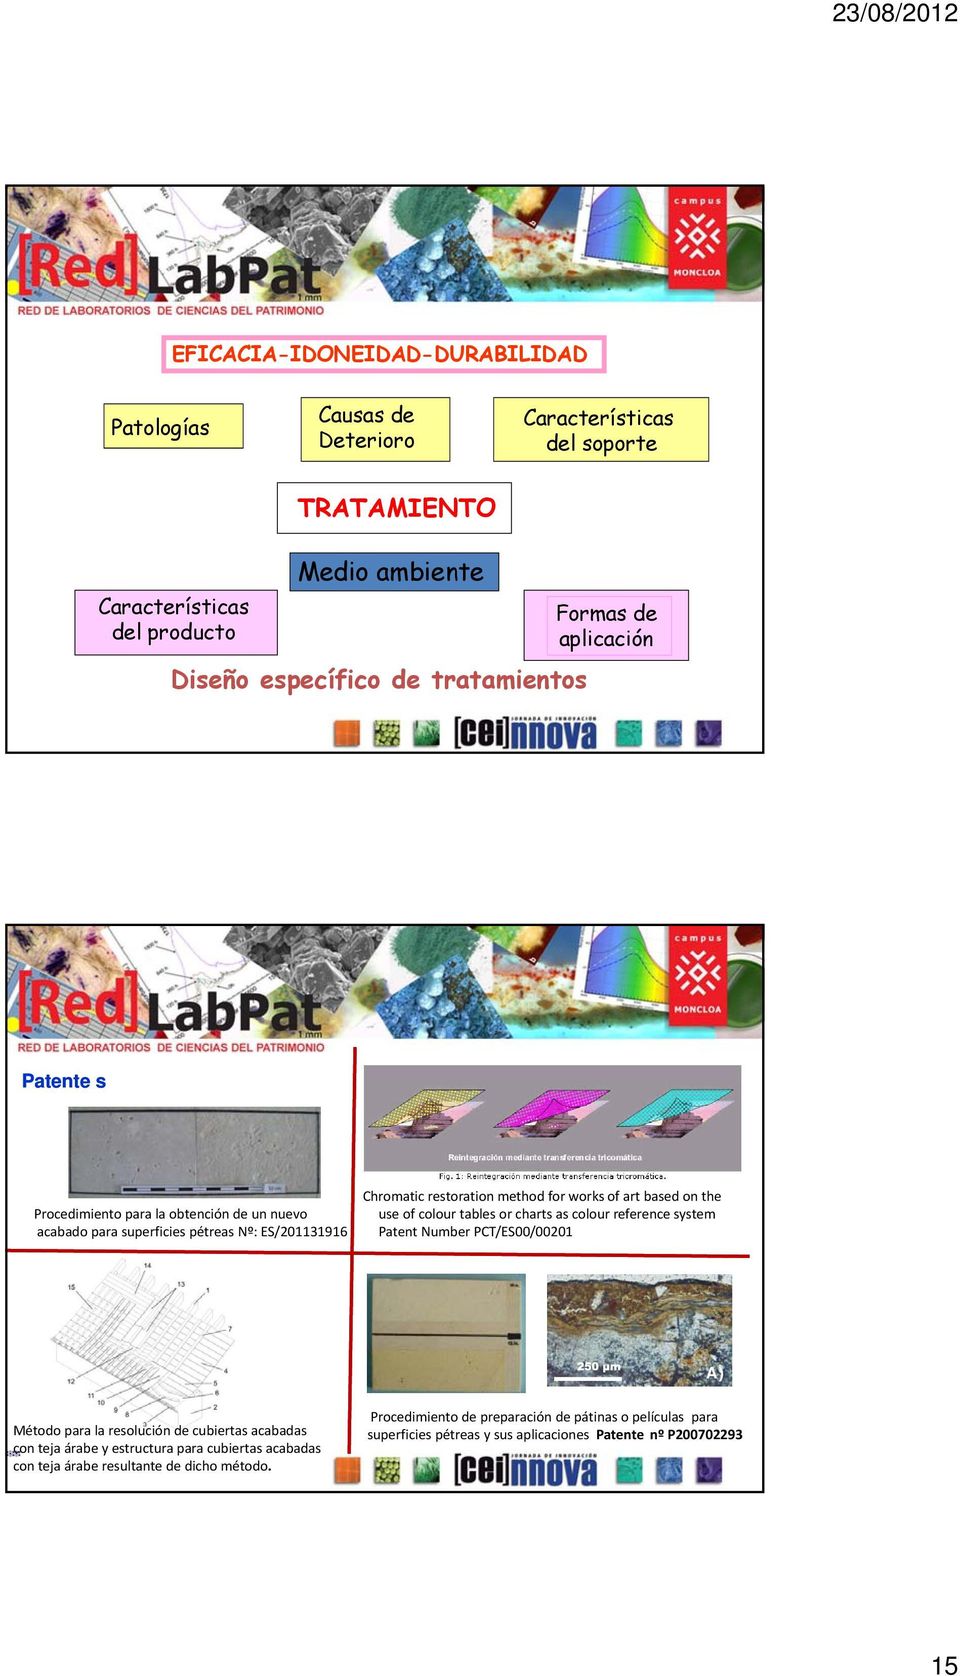 the use of colour tables or charts as colour reference system Patent Number PCT/ES00/00201 A) Método para la resolución de cubiertas acabadas con teja árabe y estructura para